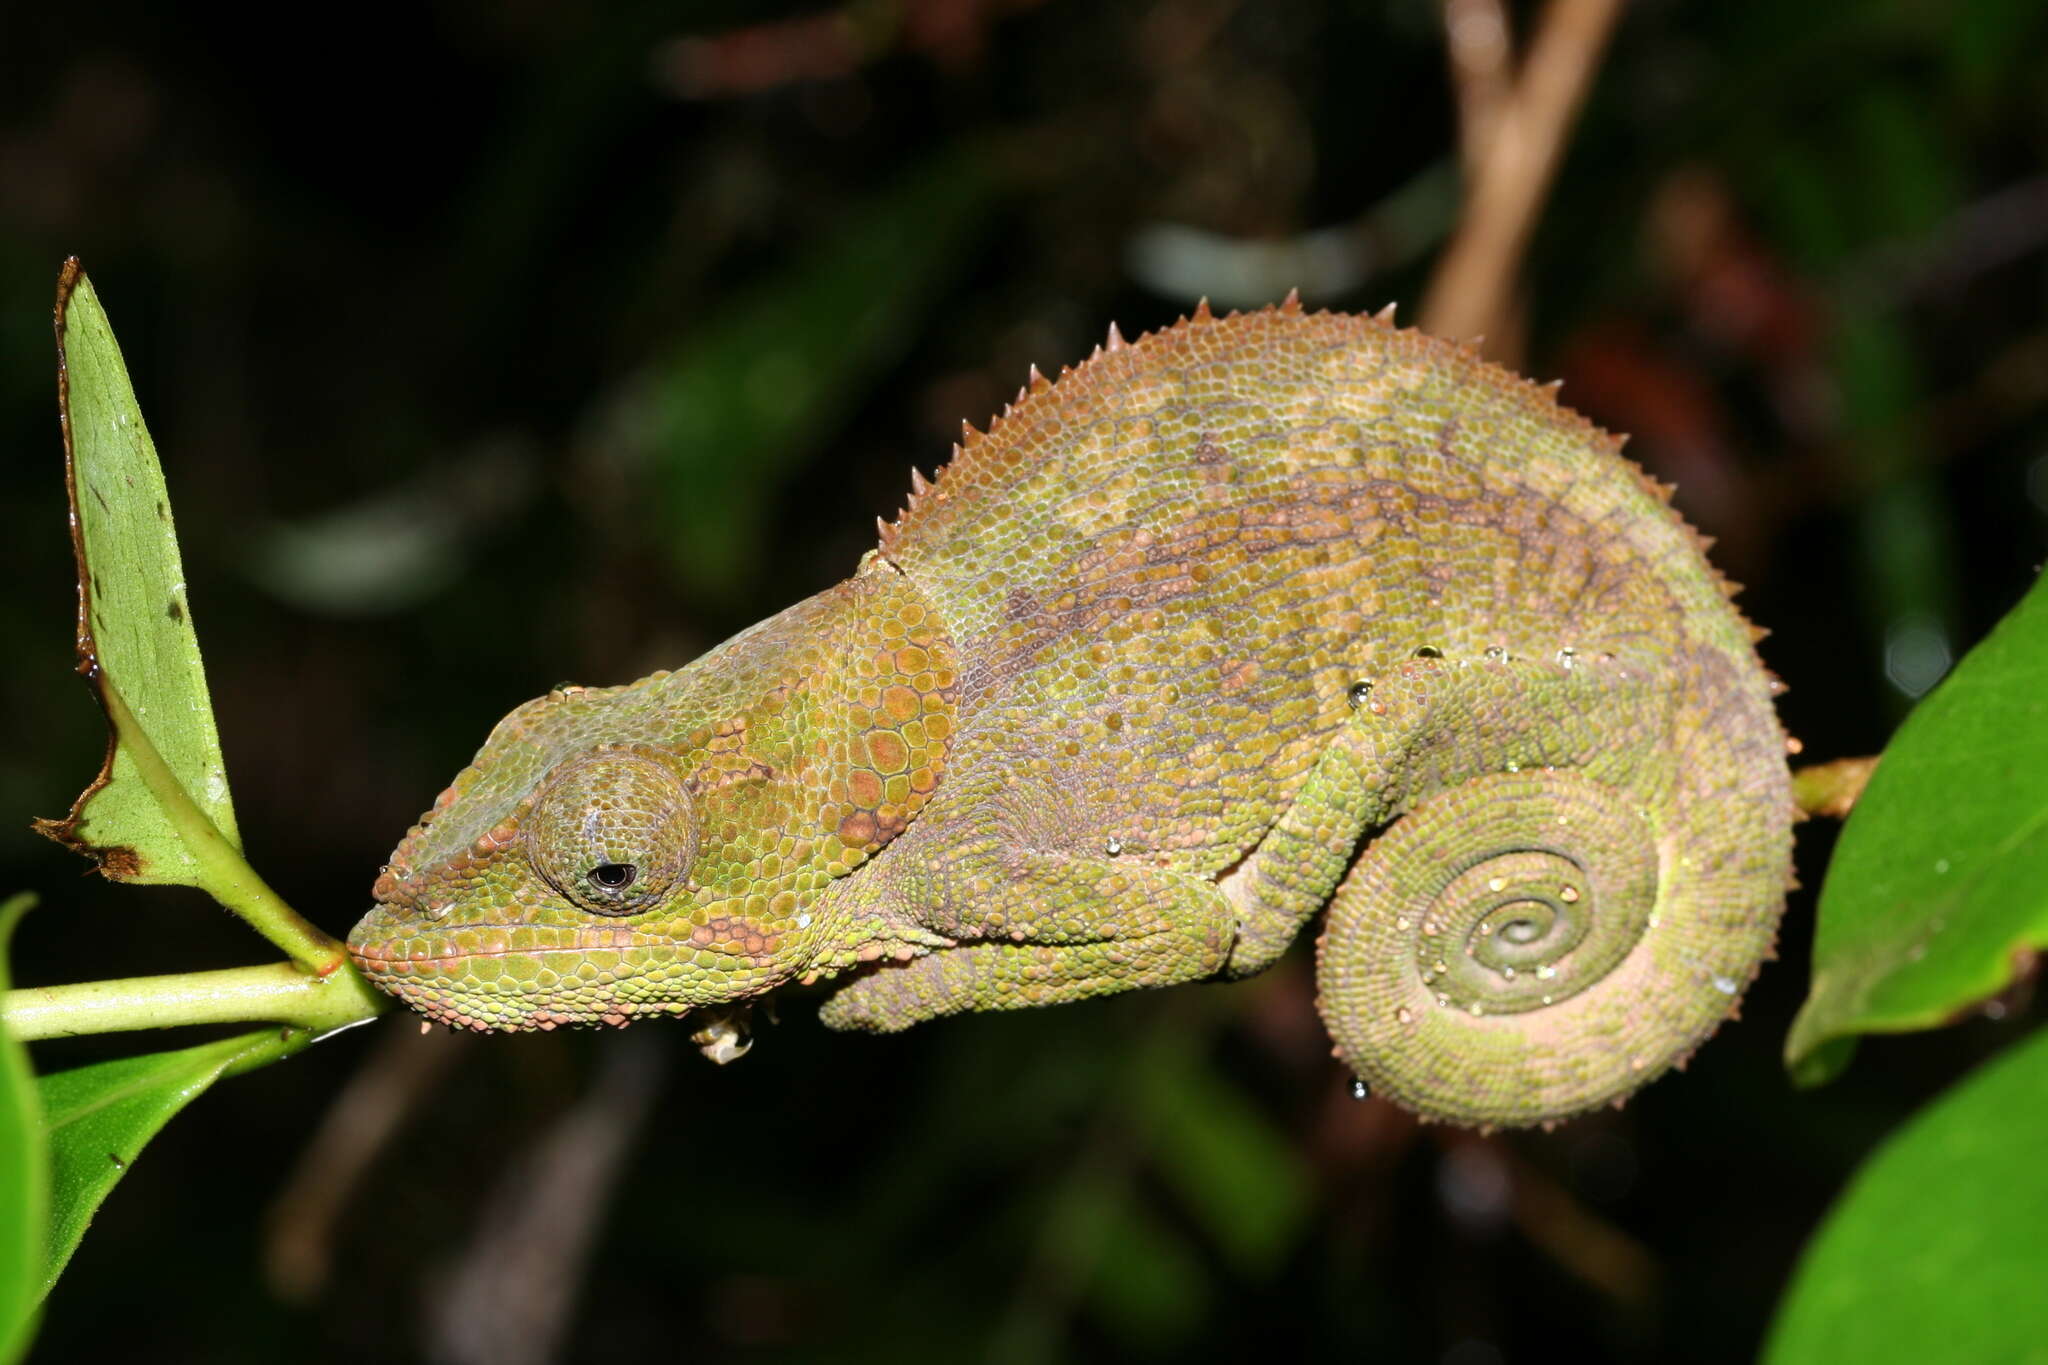 Image of Blue-legged chameleon